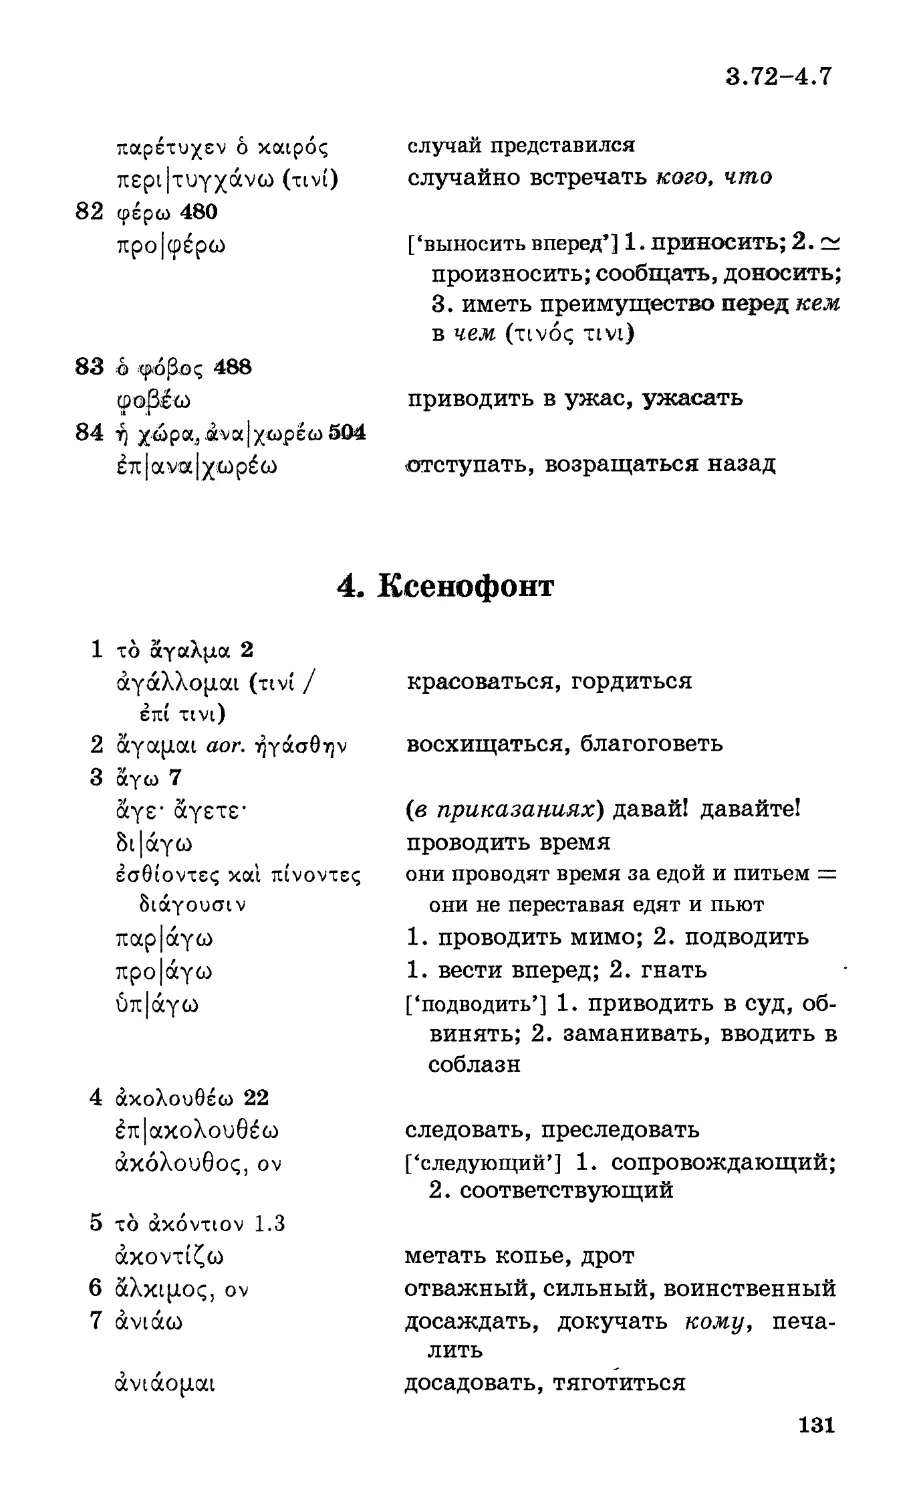 4. Ксенофонт